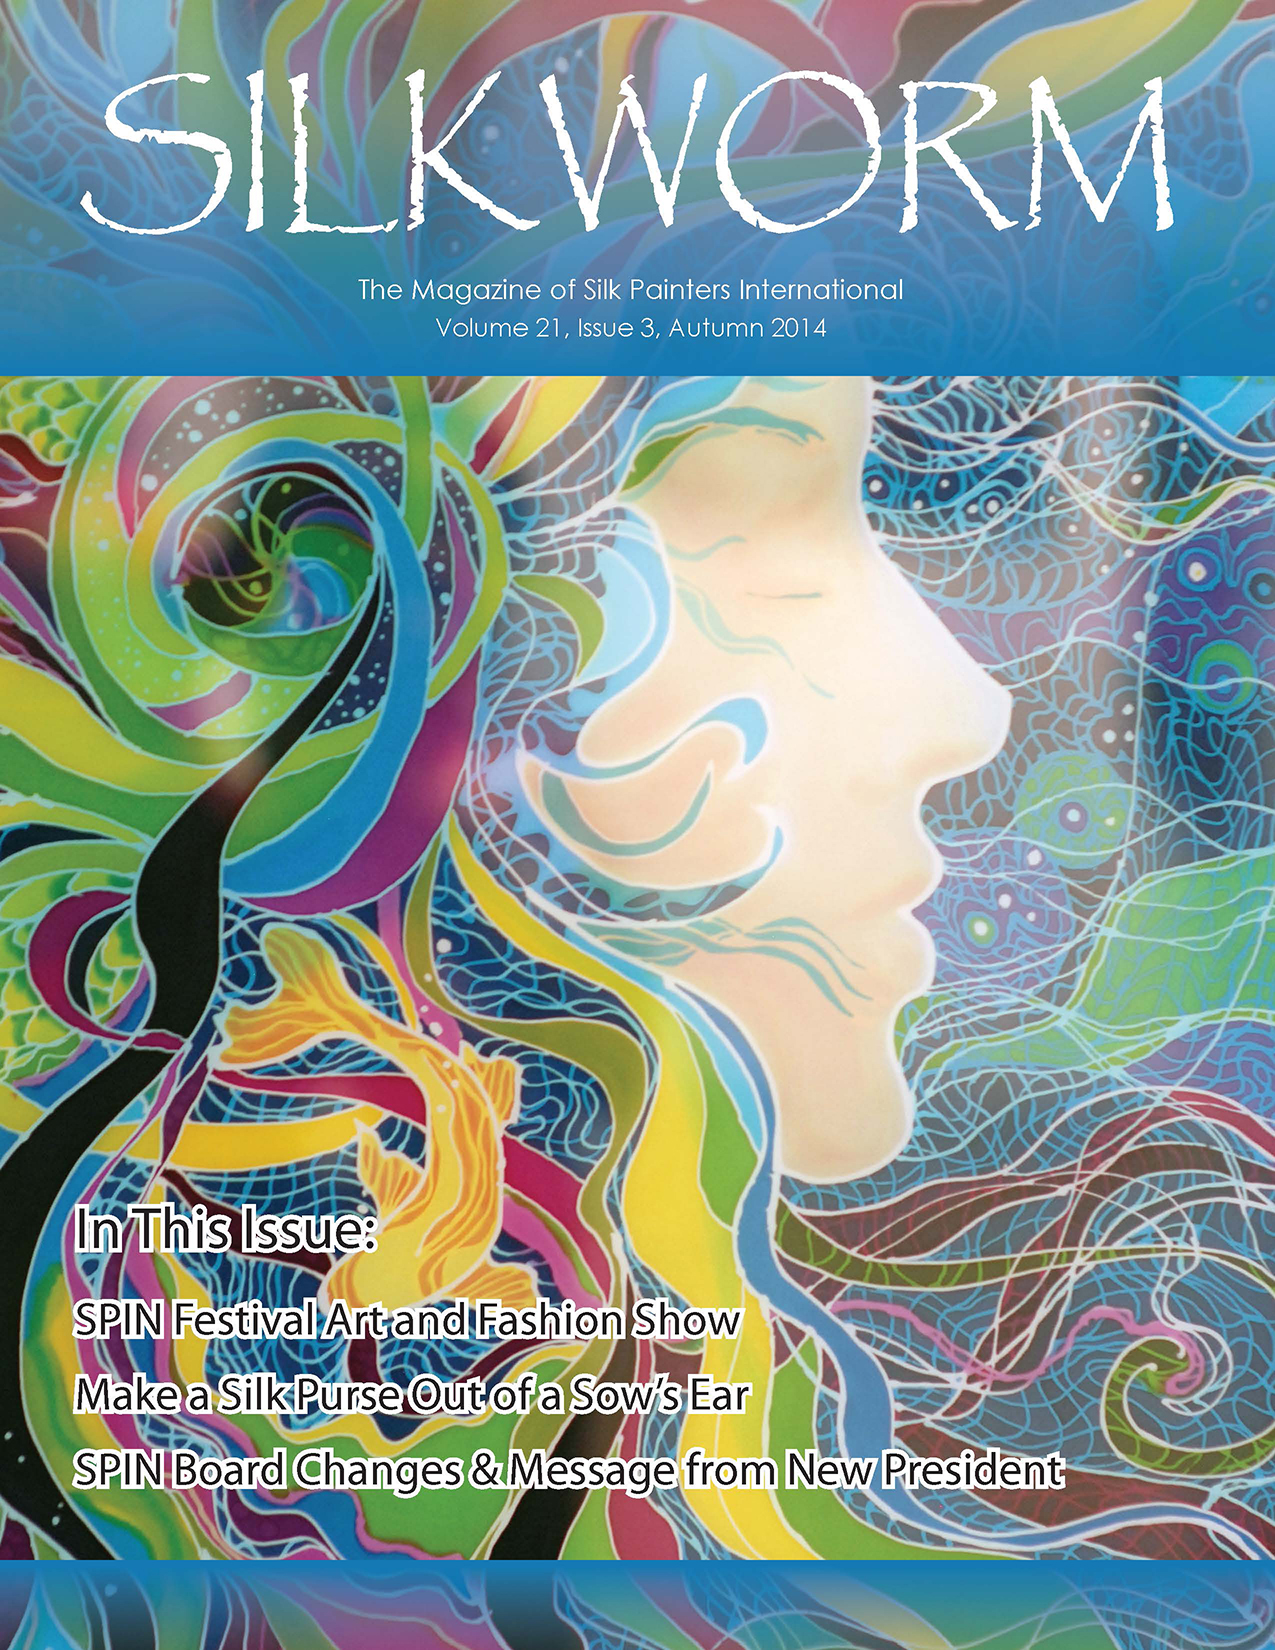 Silkworm Cover - V21 No. 3